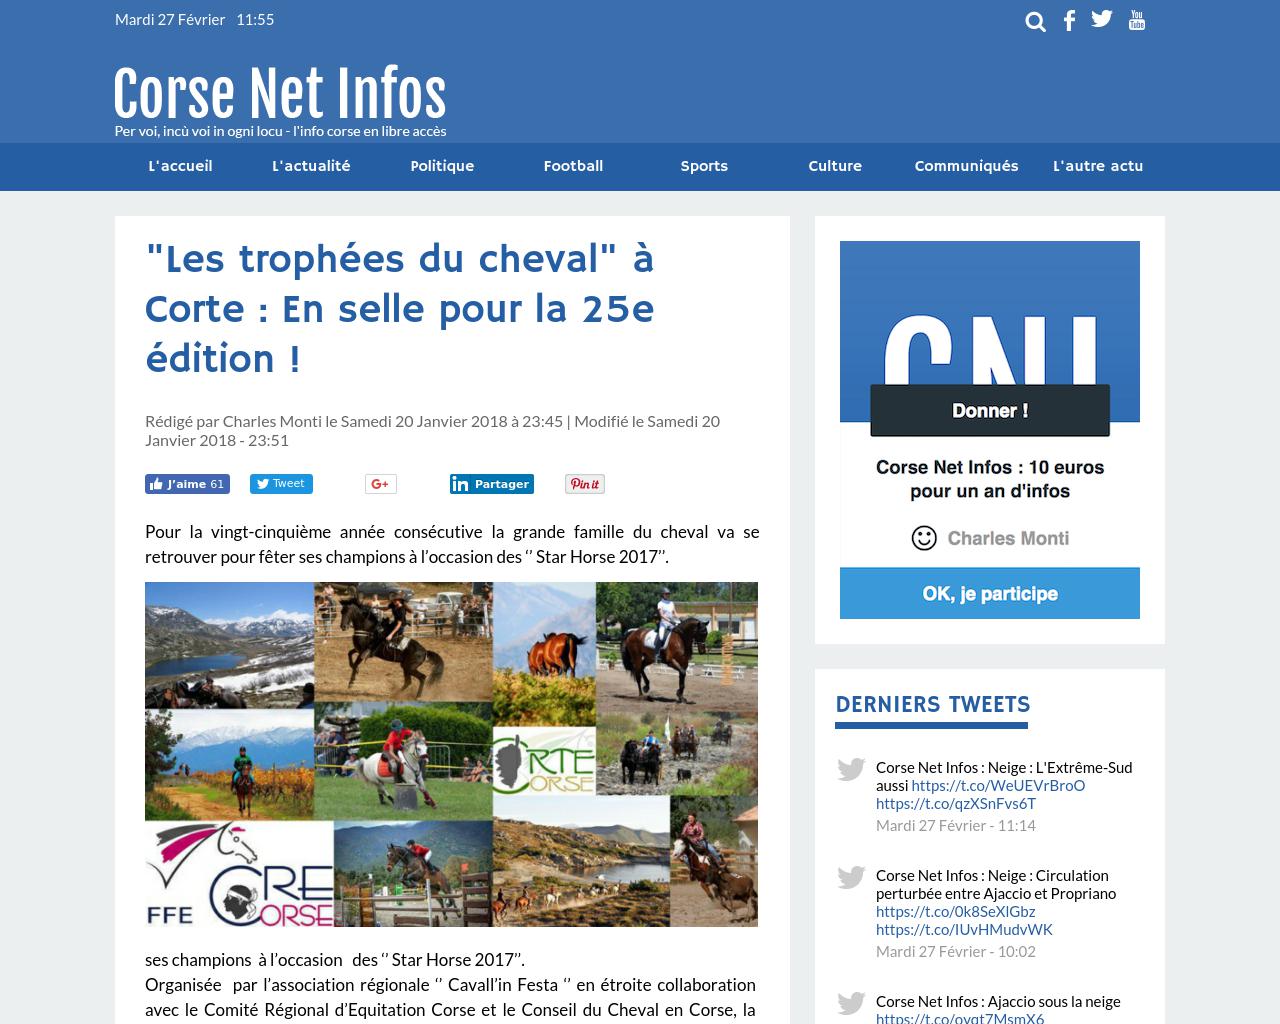 20/01/2018 : "Les trophées du cheval" à Corte : En selle pour la 25e édition ! 